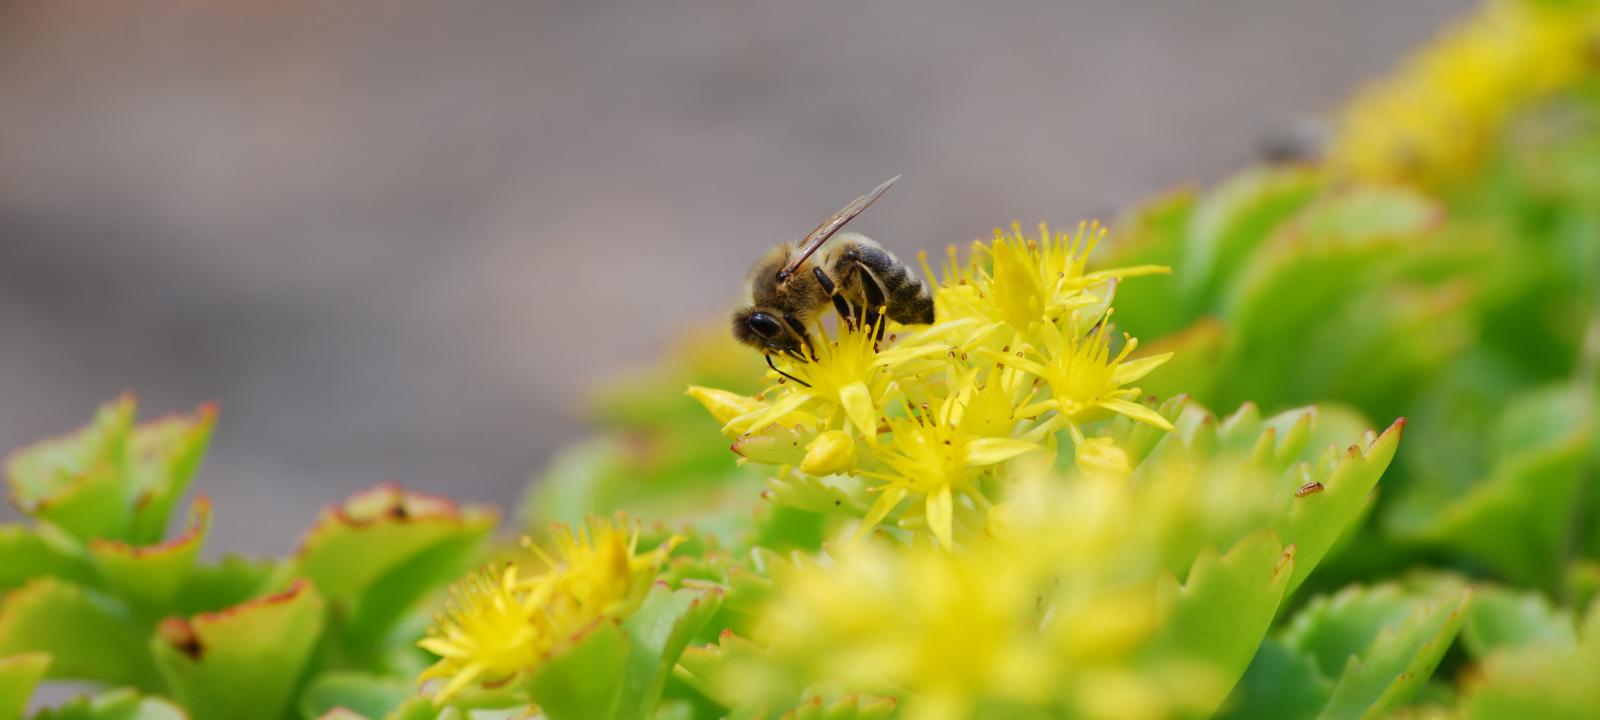 Bee on Sedum plant